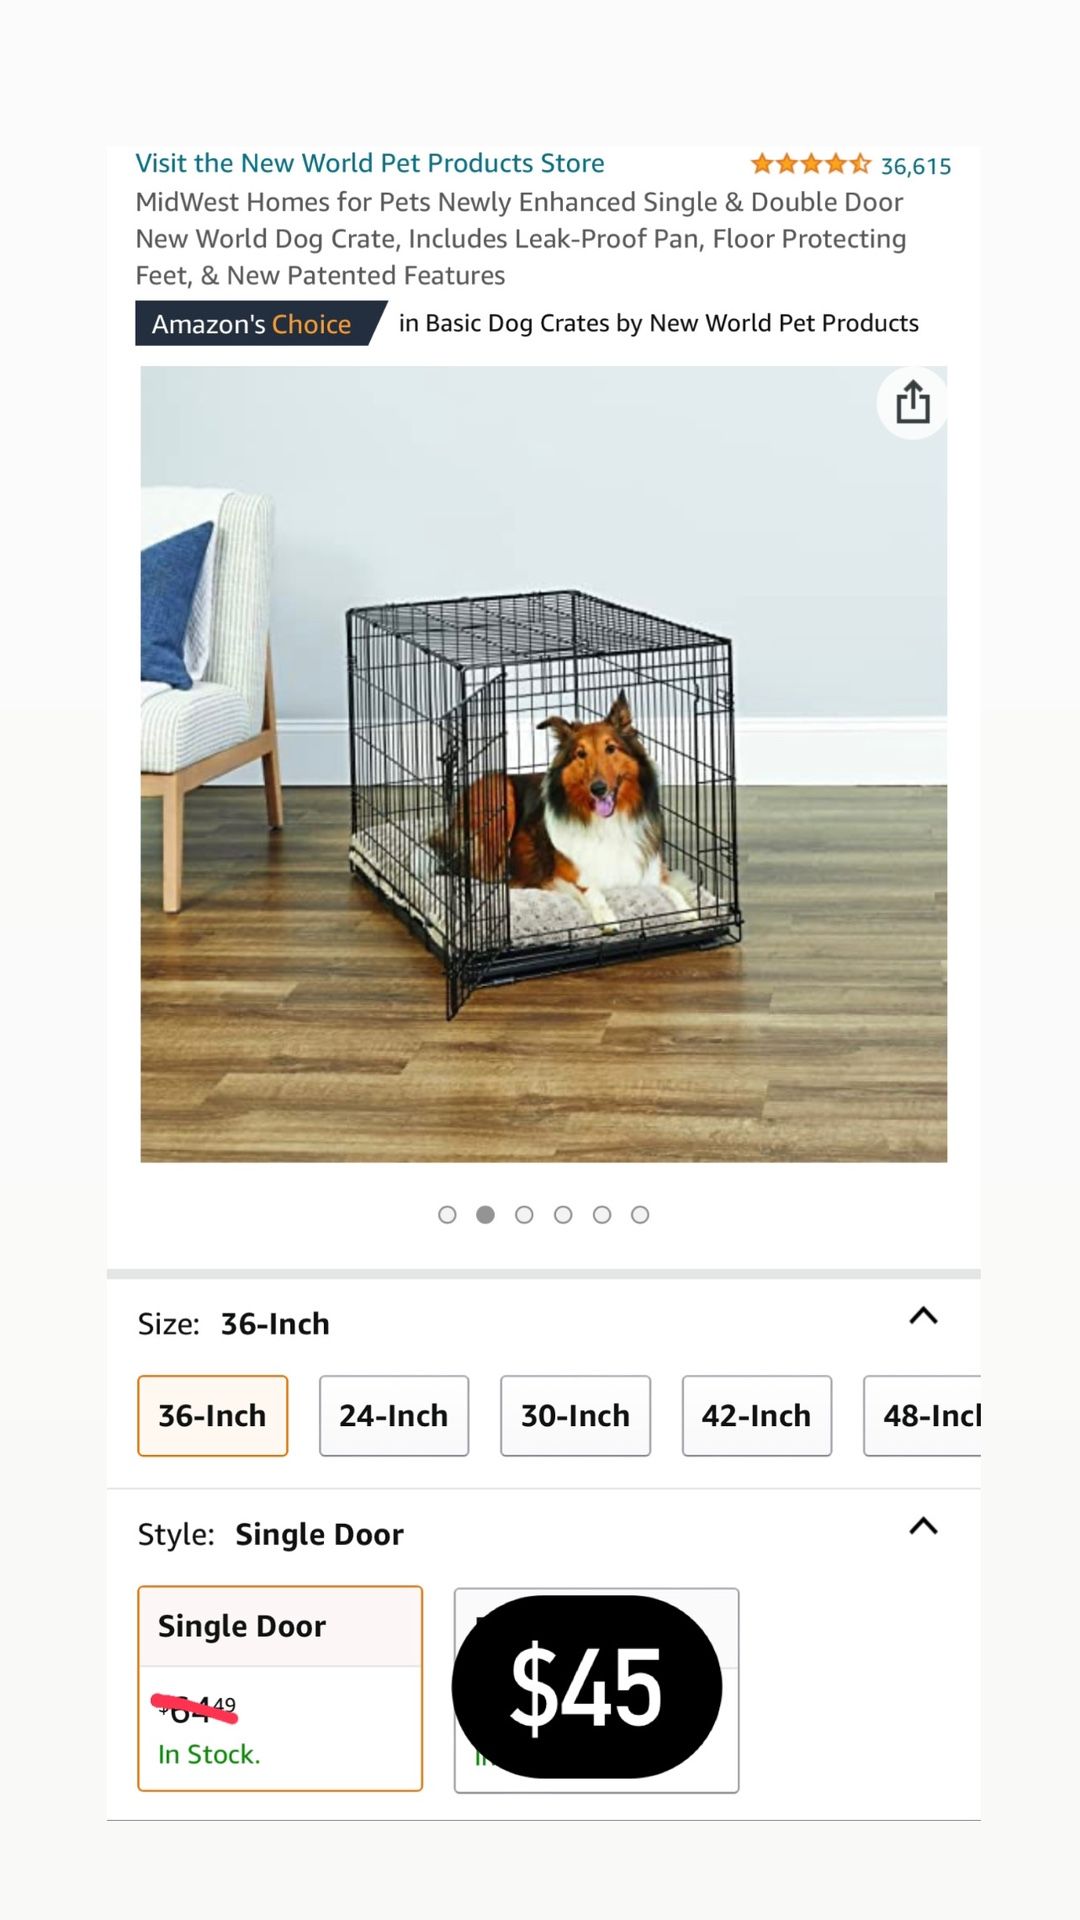 36” Single Door New World Dog Crate, Includes Leak-Proof Pan, Floor Protecting Feet